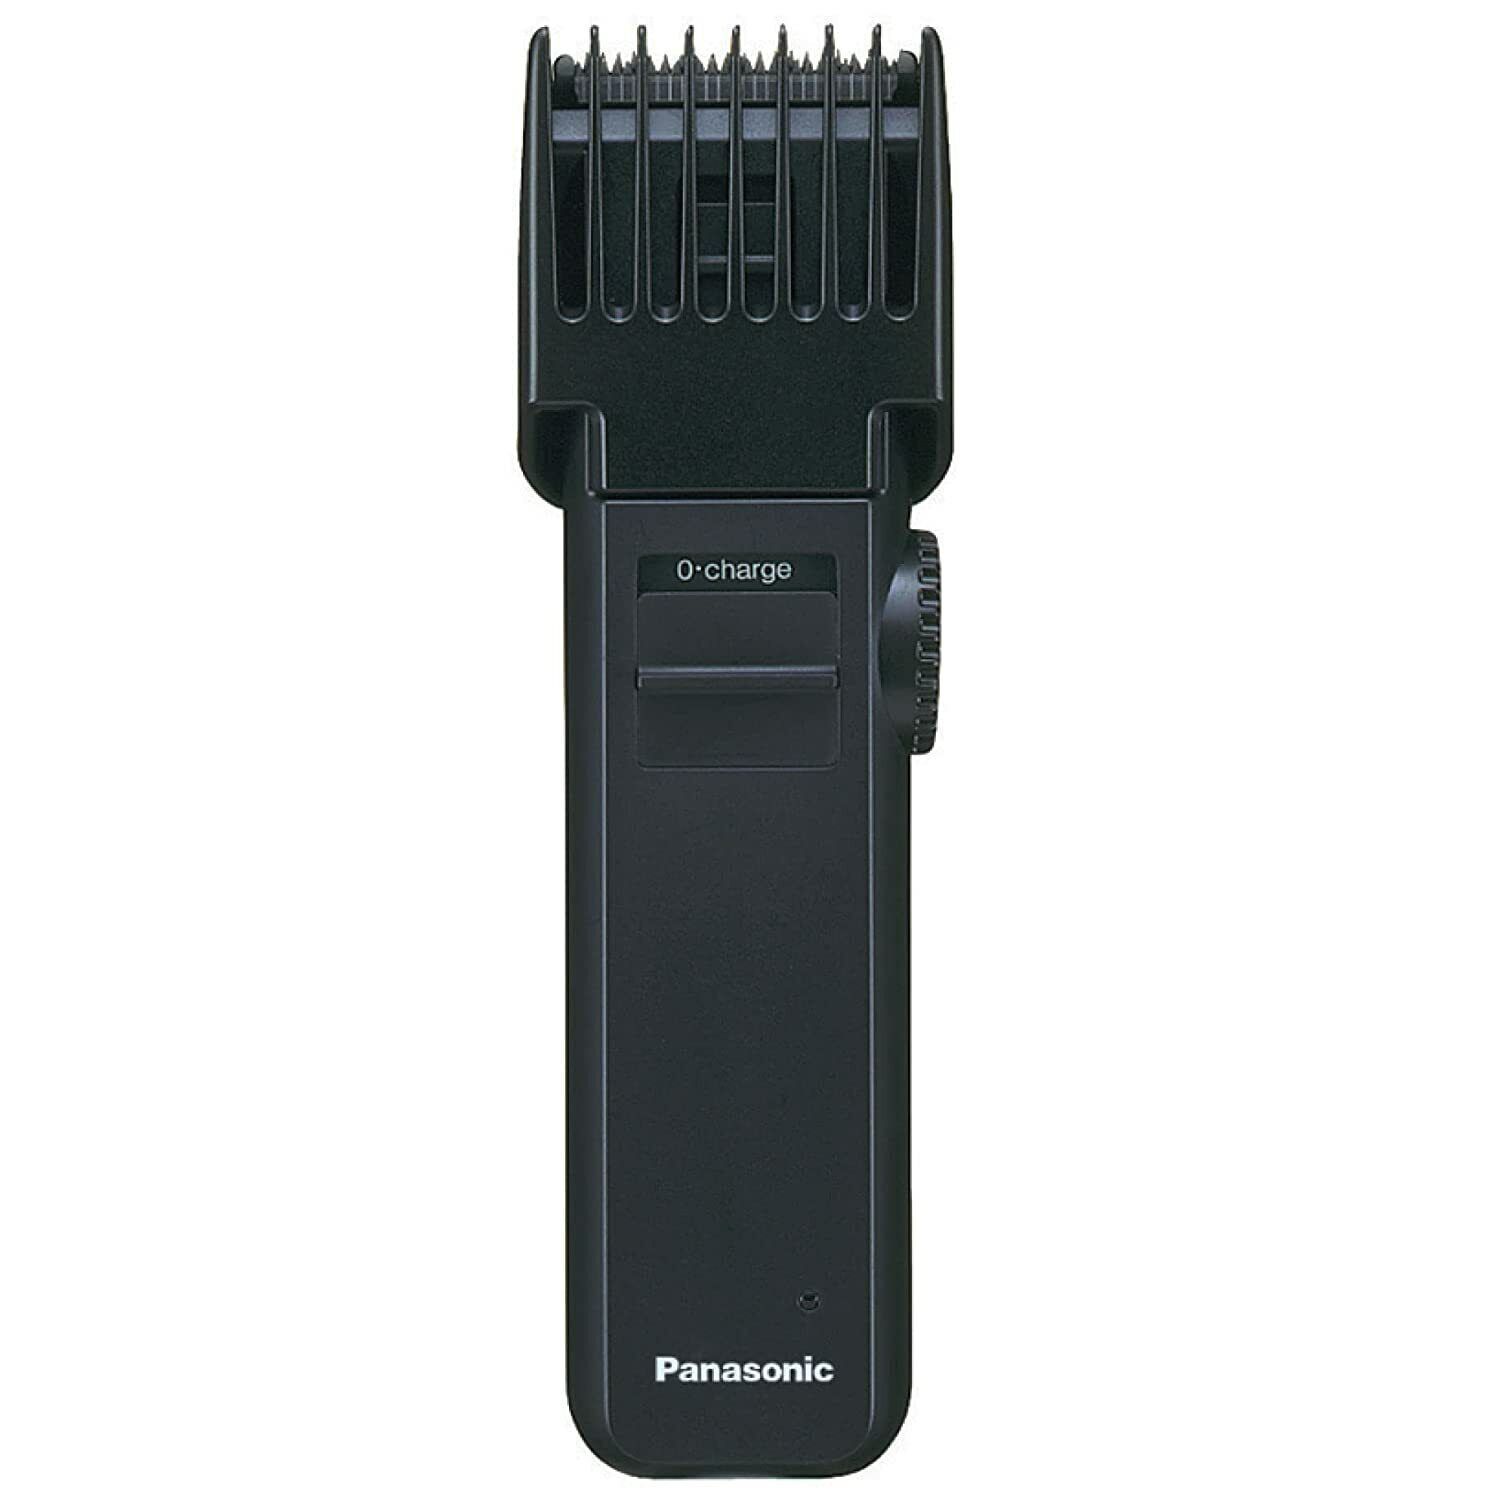 Триммер Panasonic ER 2031 K7511 черный триммер panasonic er 2031 k7511